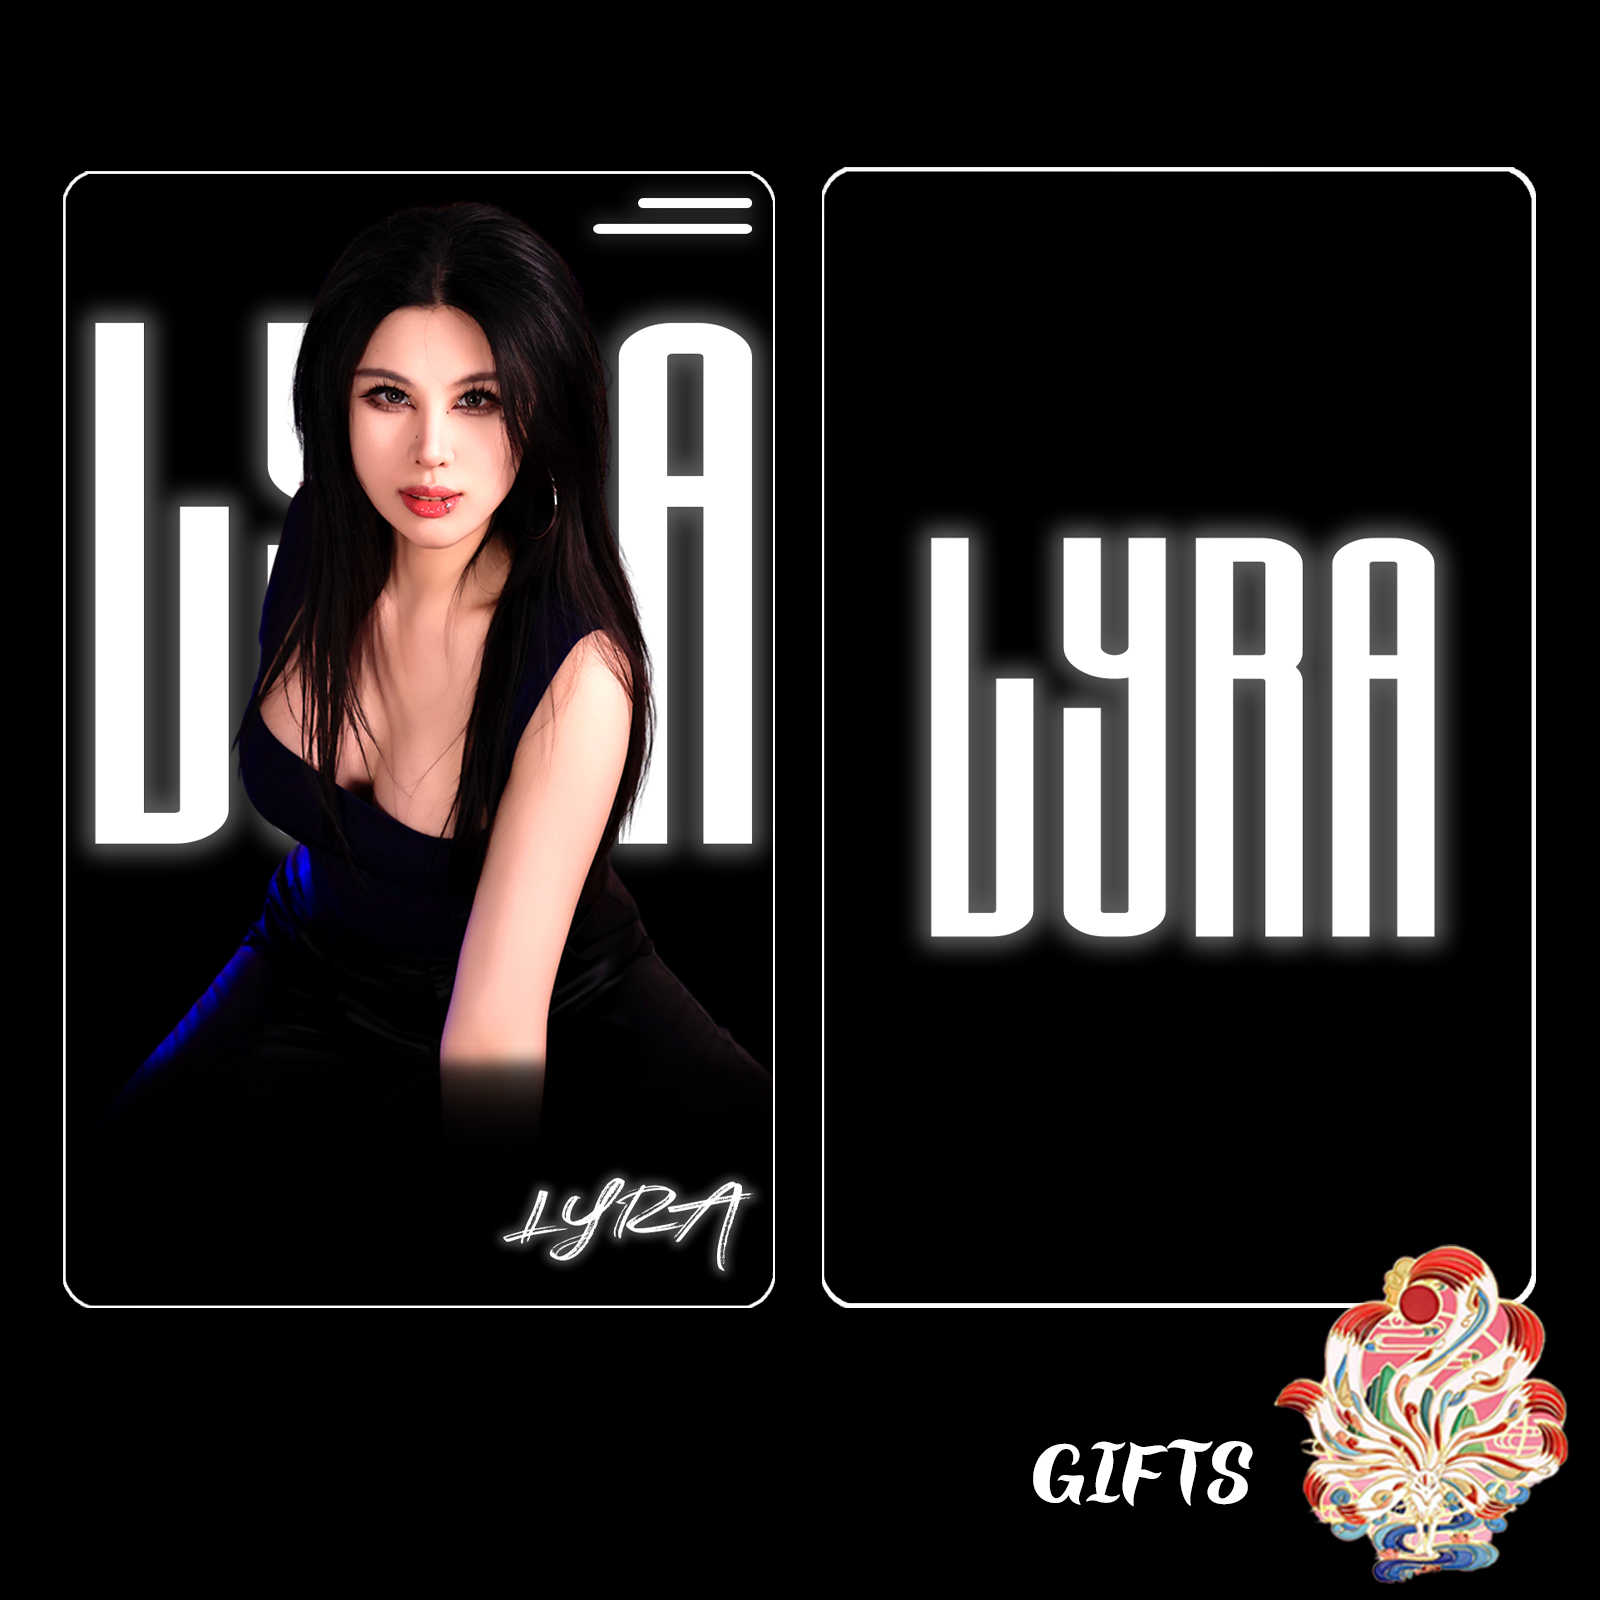 Lyra cards